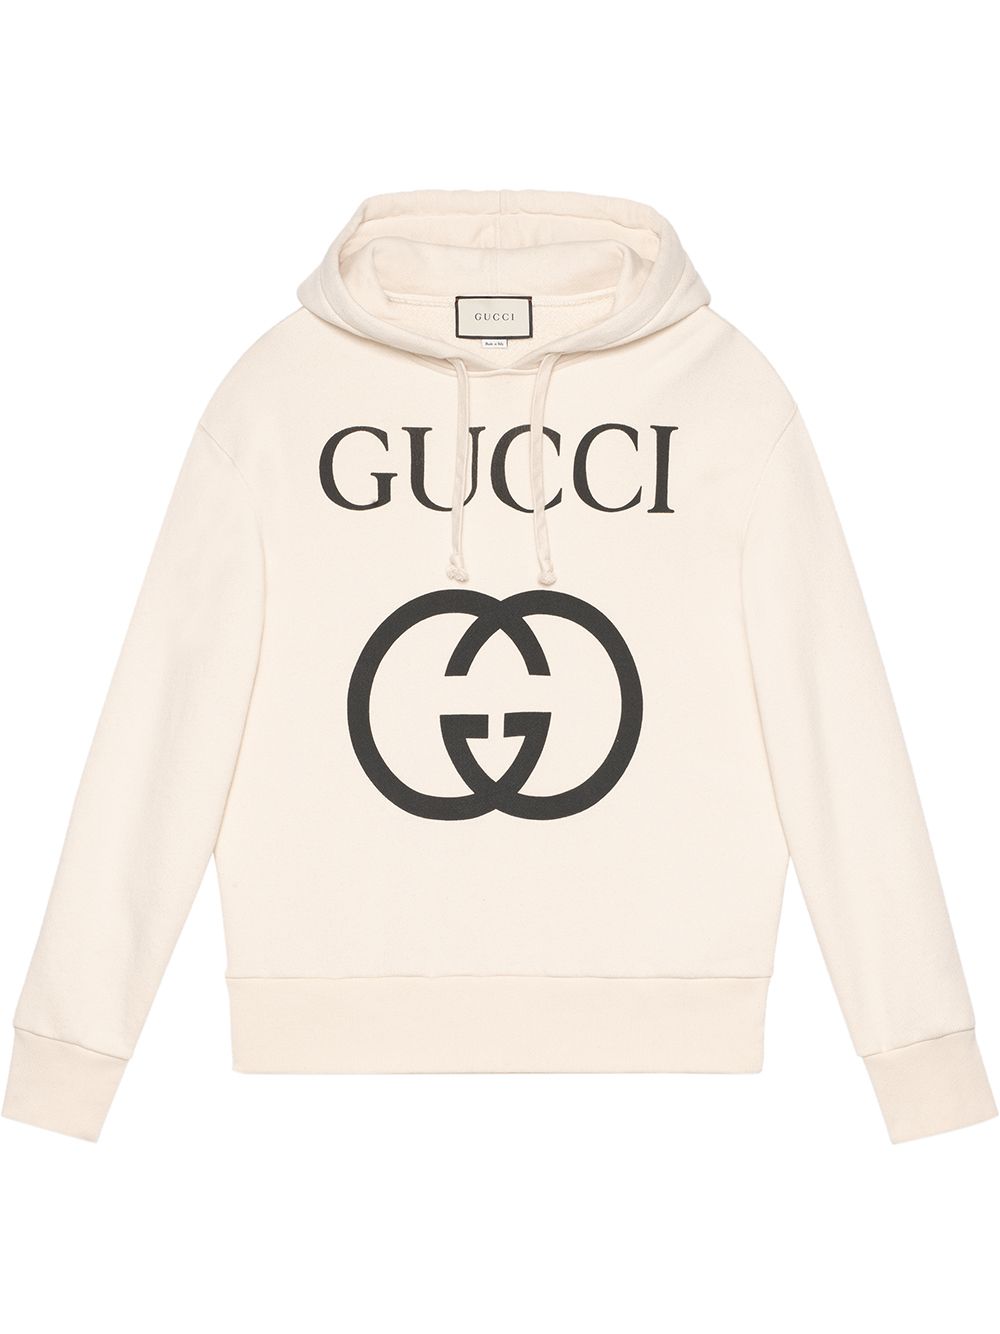 фото Gucci толстовка с капюшоном и логотипом